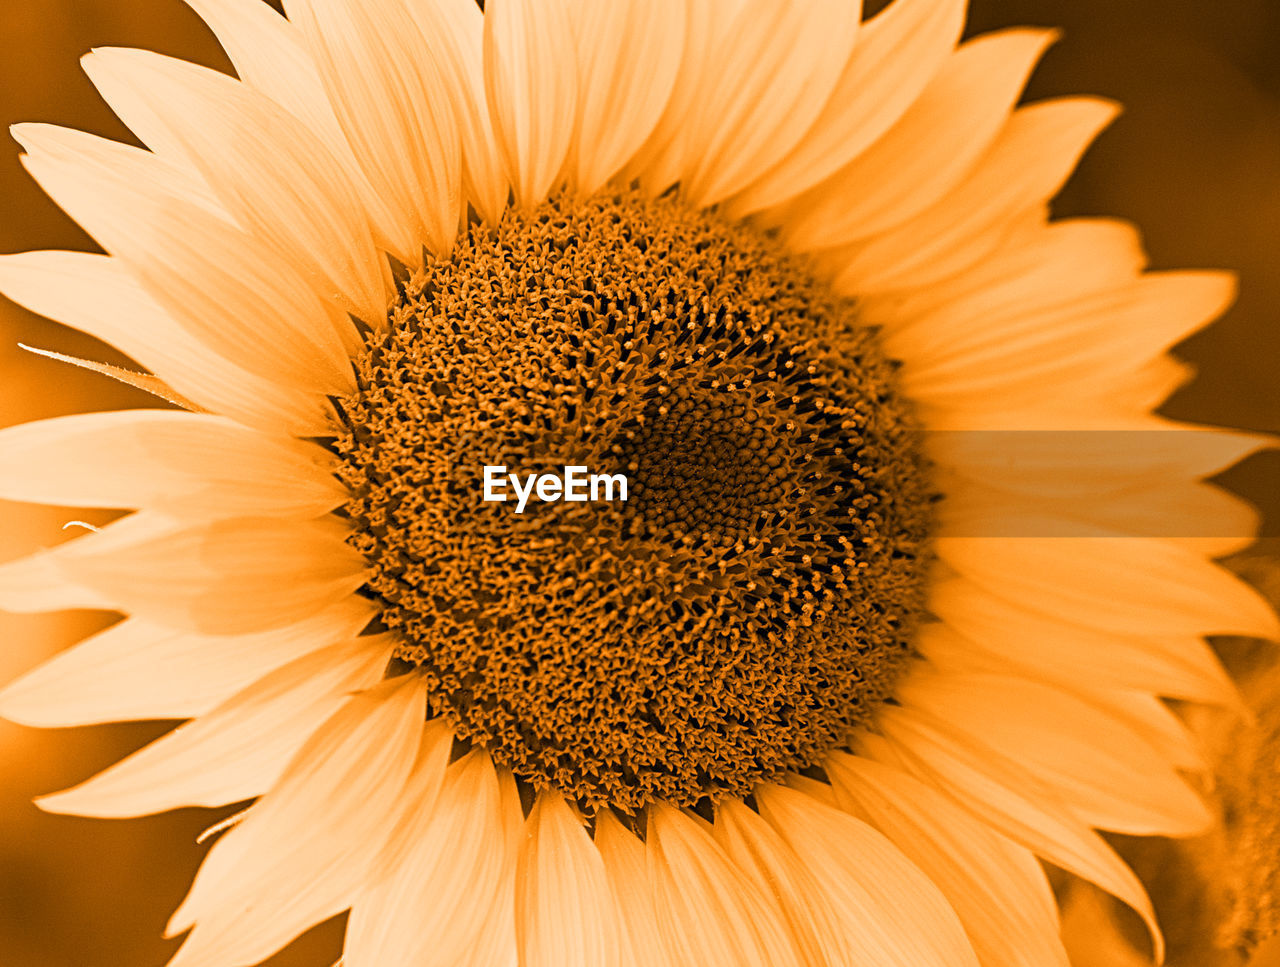 Sunflower in orange tones